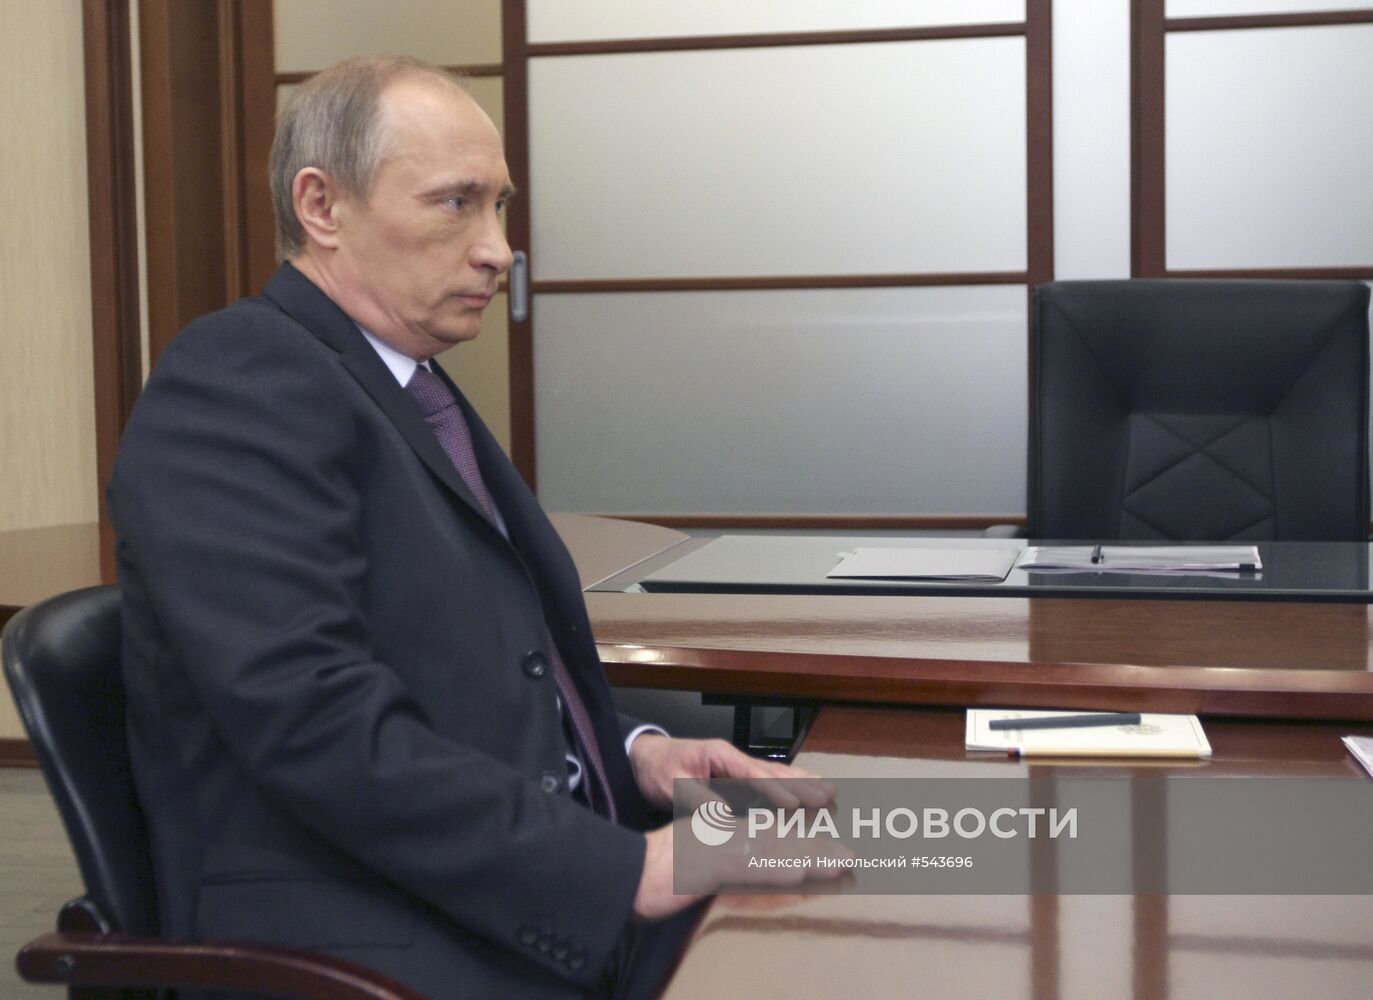 Владимир Путин провел рабочую встречу с Игорем Сечиным в Москве